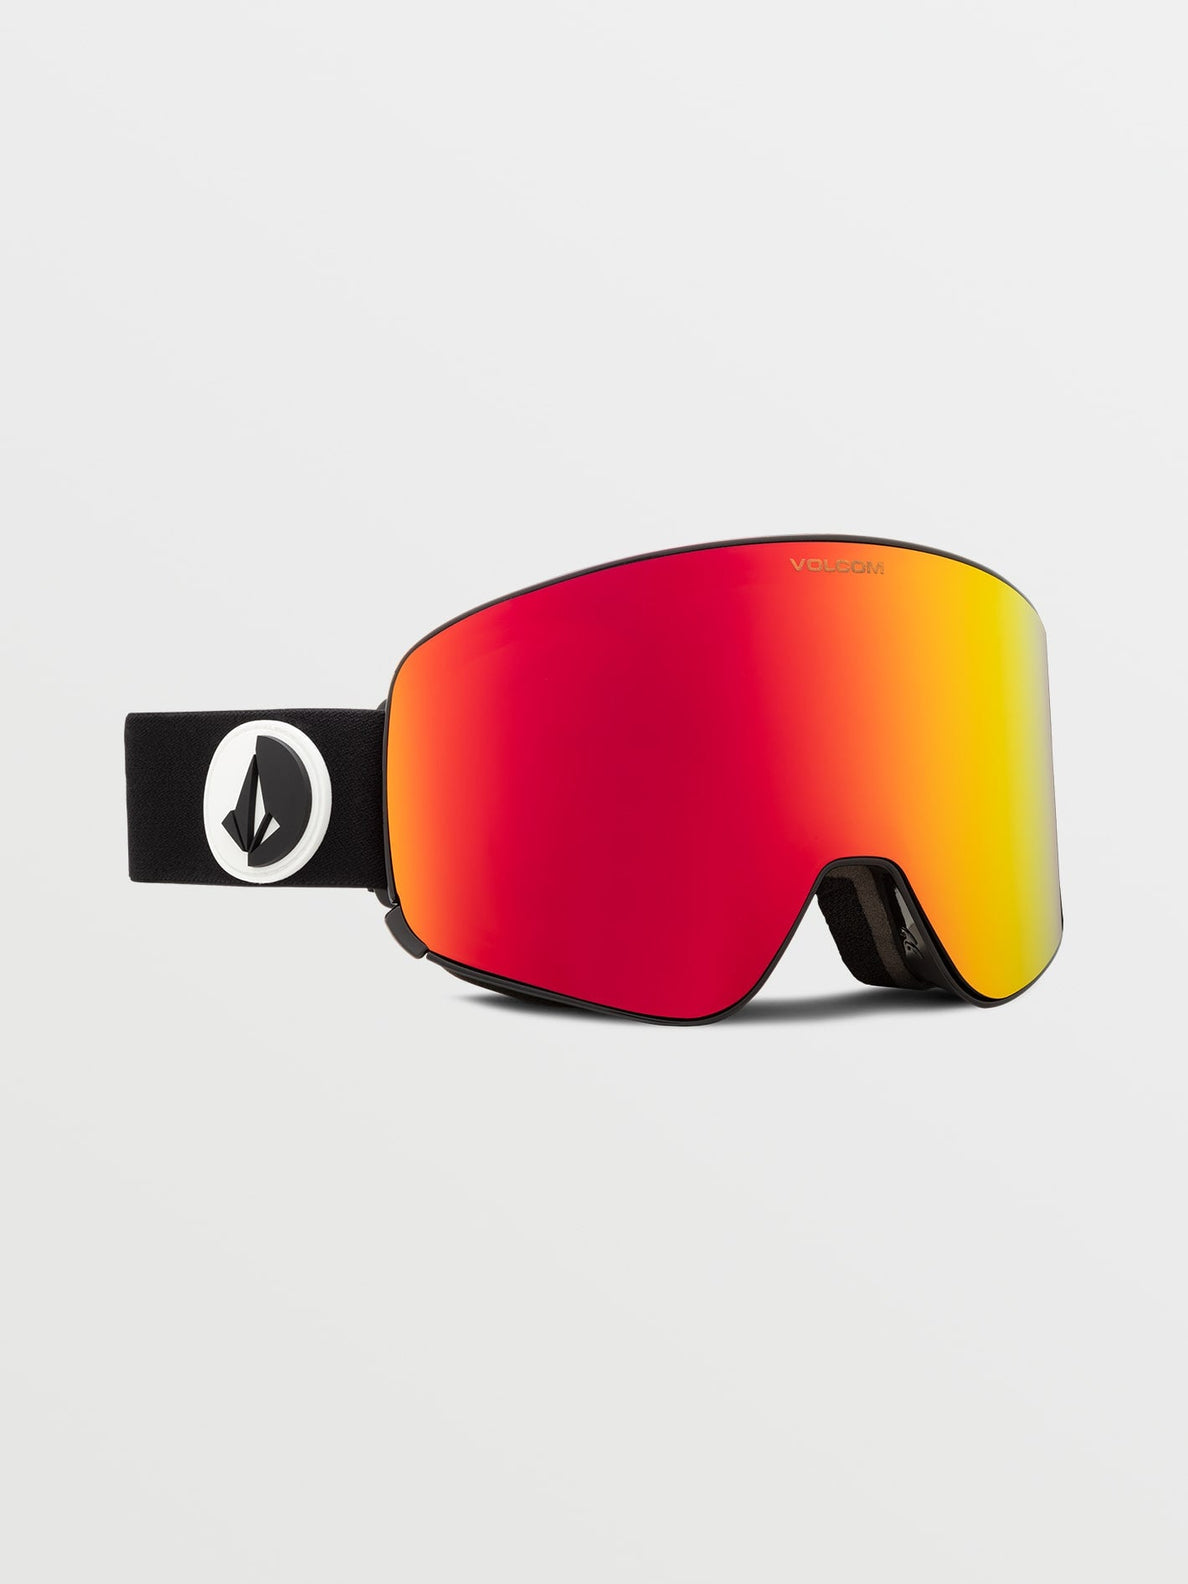 Gafas de ventisca Volcom Odyssey Gloss Black (Bonus Lens) + Red Chrome